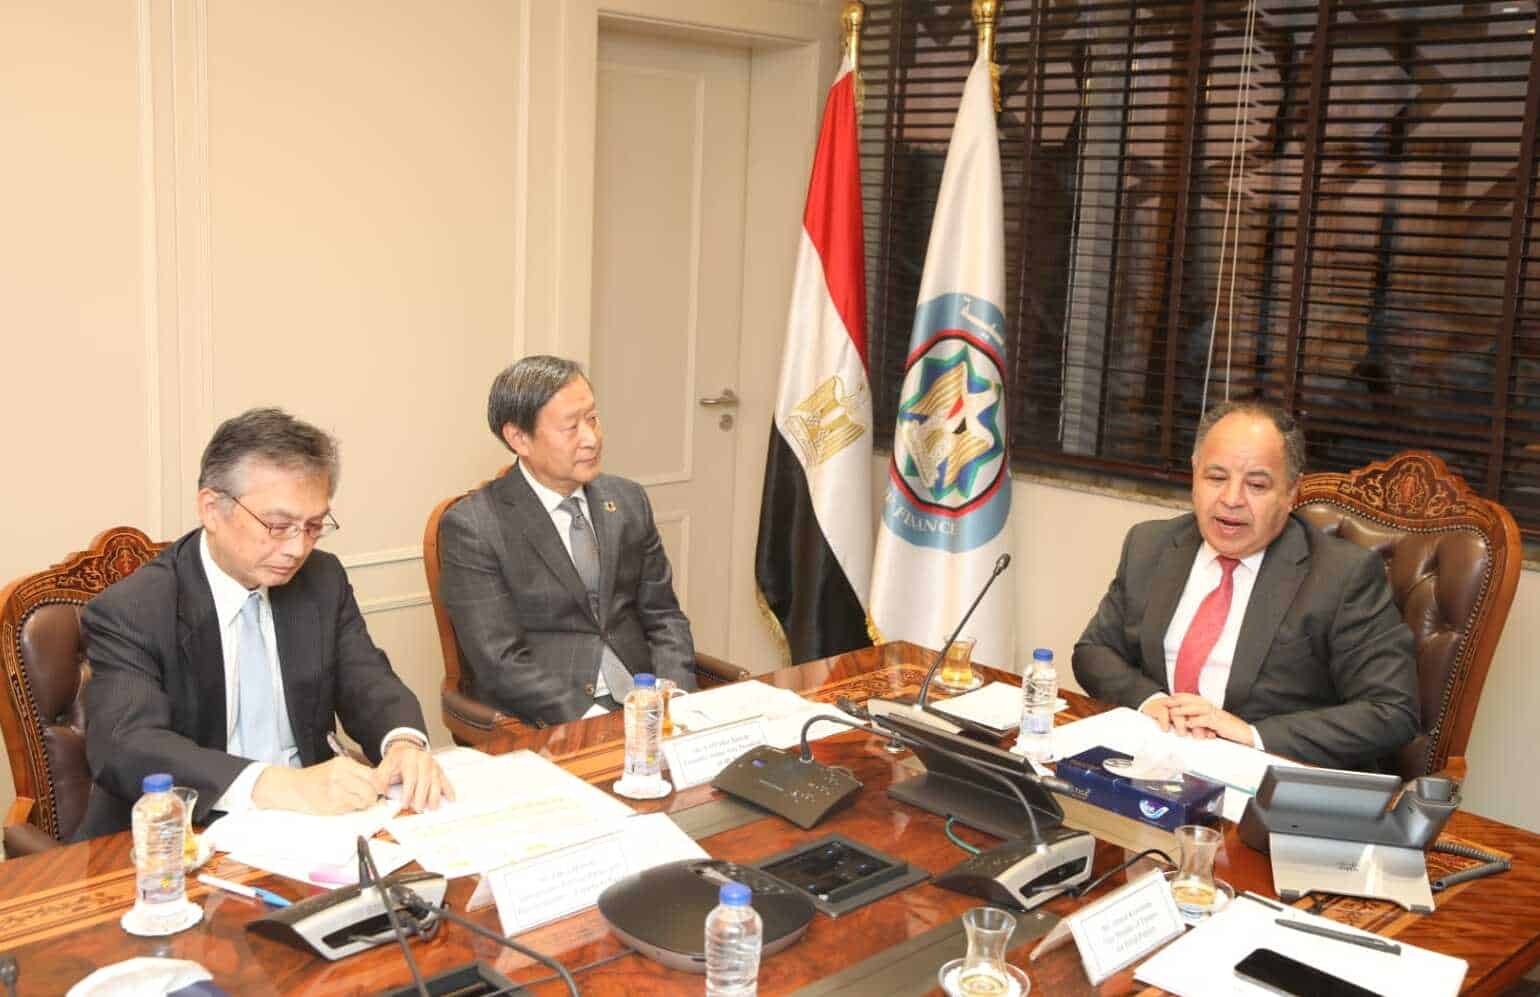 المالية: المدارس والجامعة اليابانية بمصر نموذج لدعم اليابان لمصر
